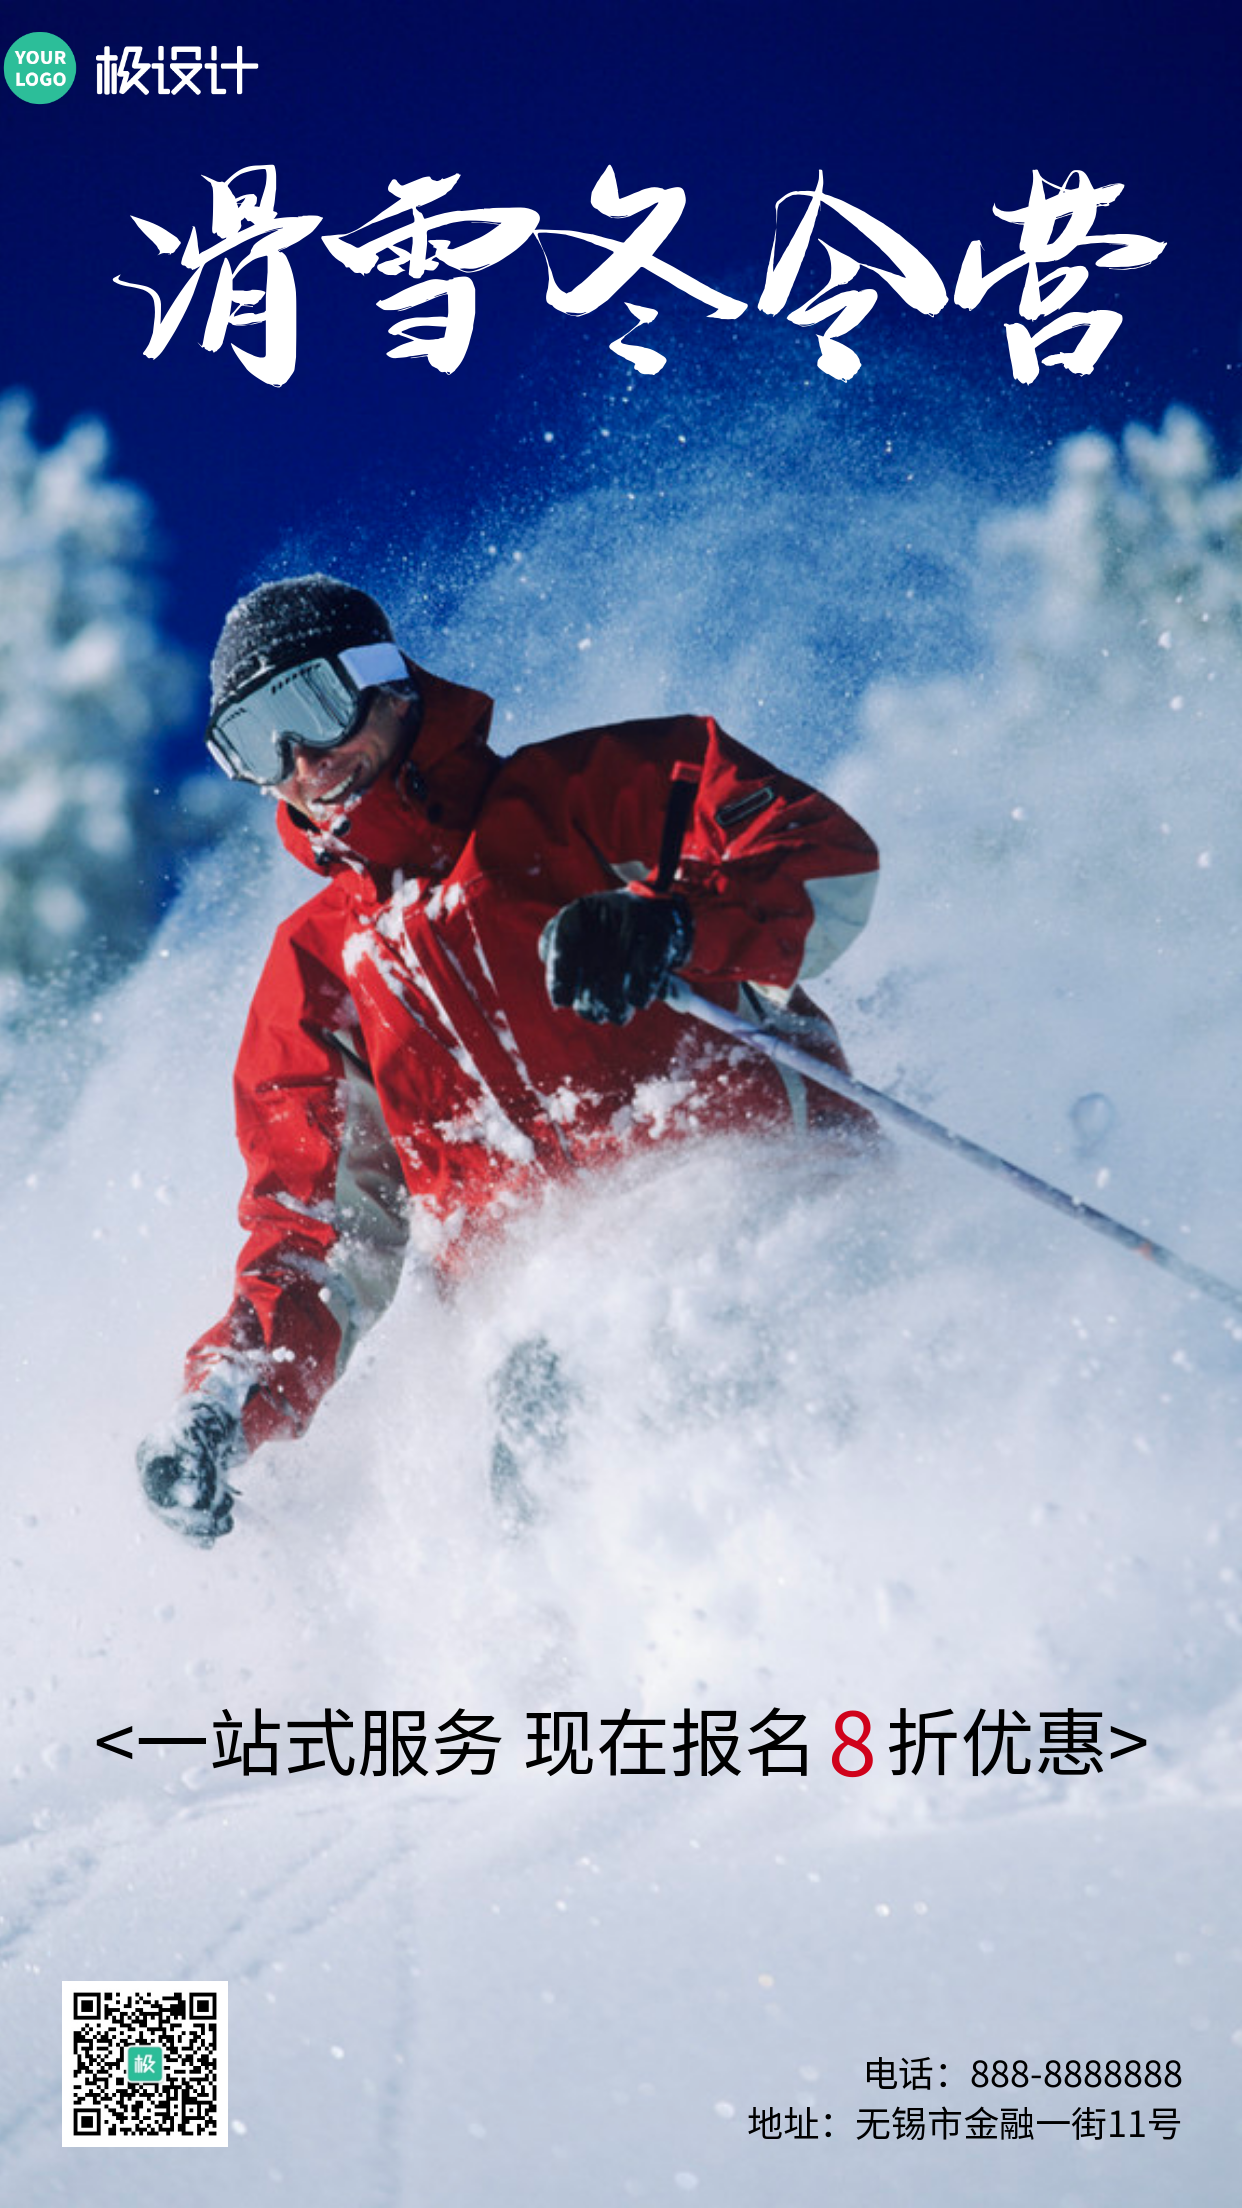 创意简约滑雪冬令营招生优惠手机营销海报